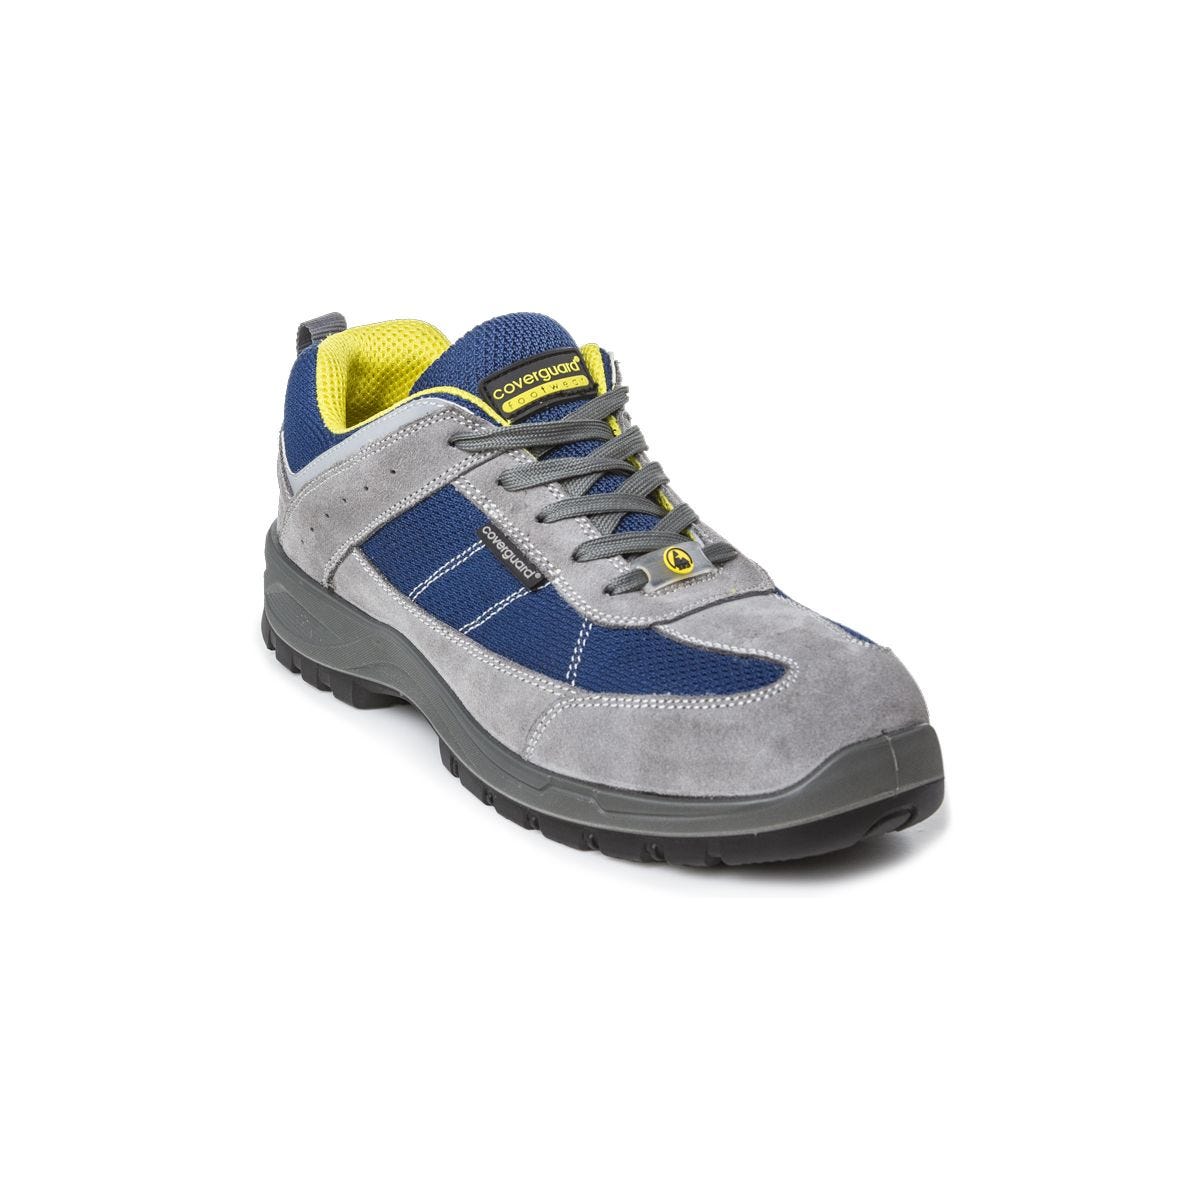 Chaussures de sécurité LEAD S1P SRC basses bleu gris - COVERGUARD - Taille 43 0